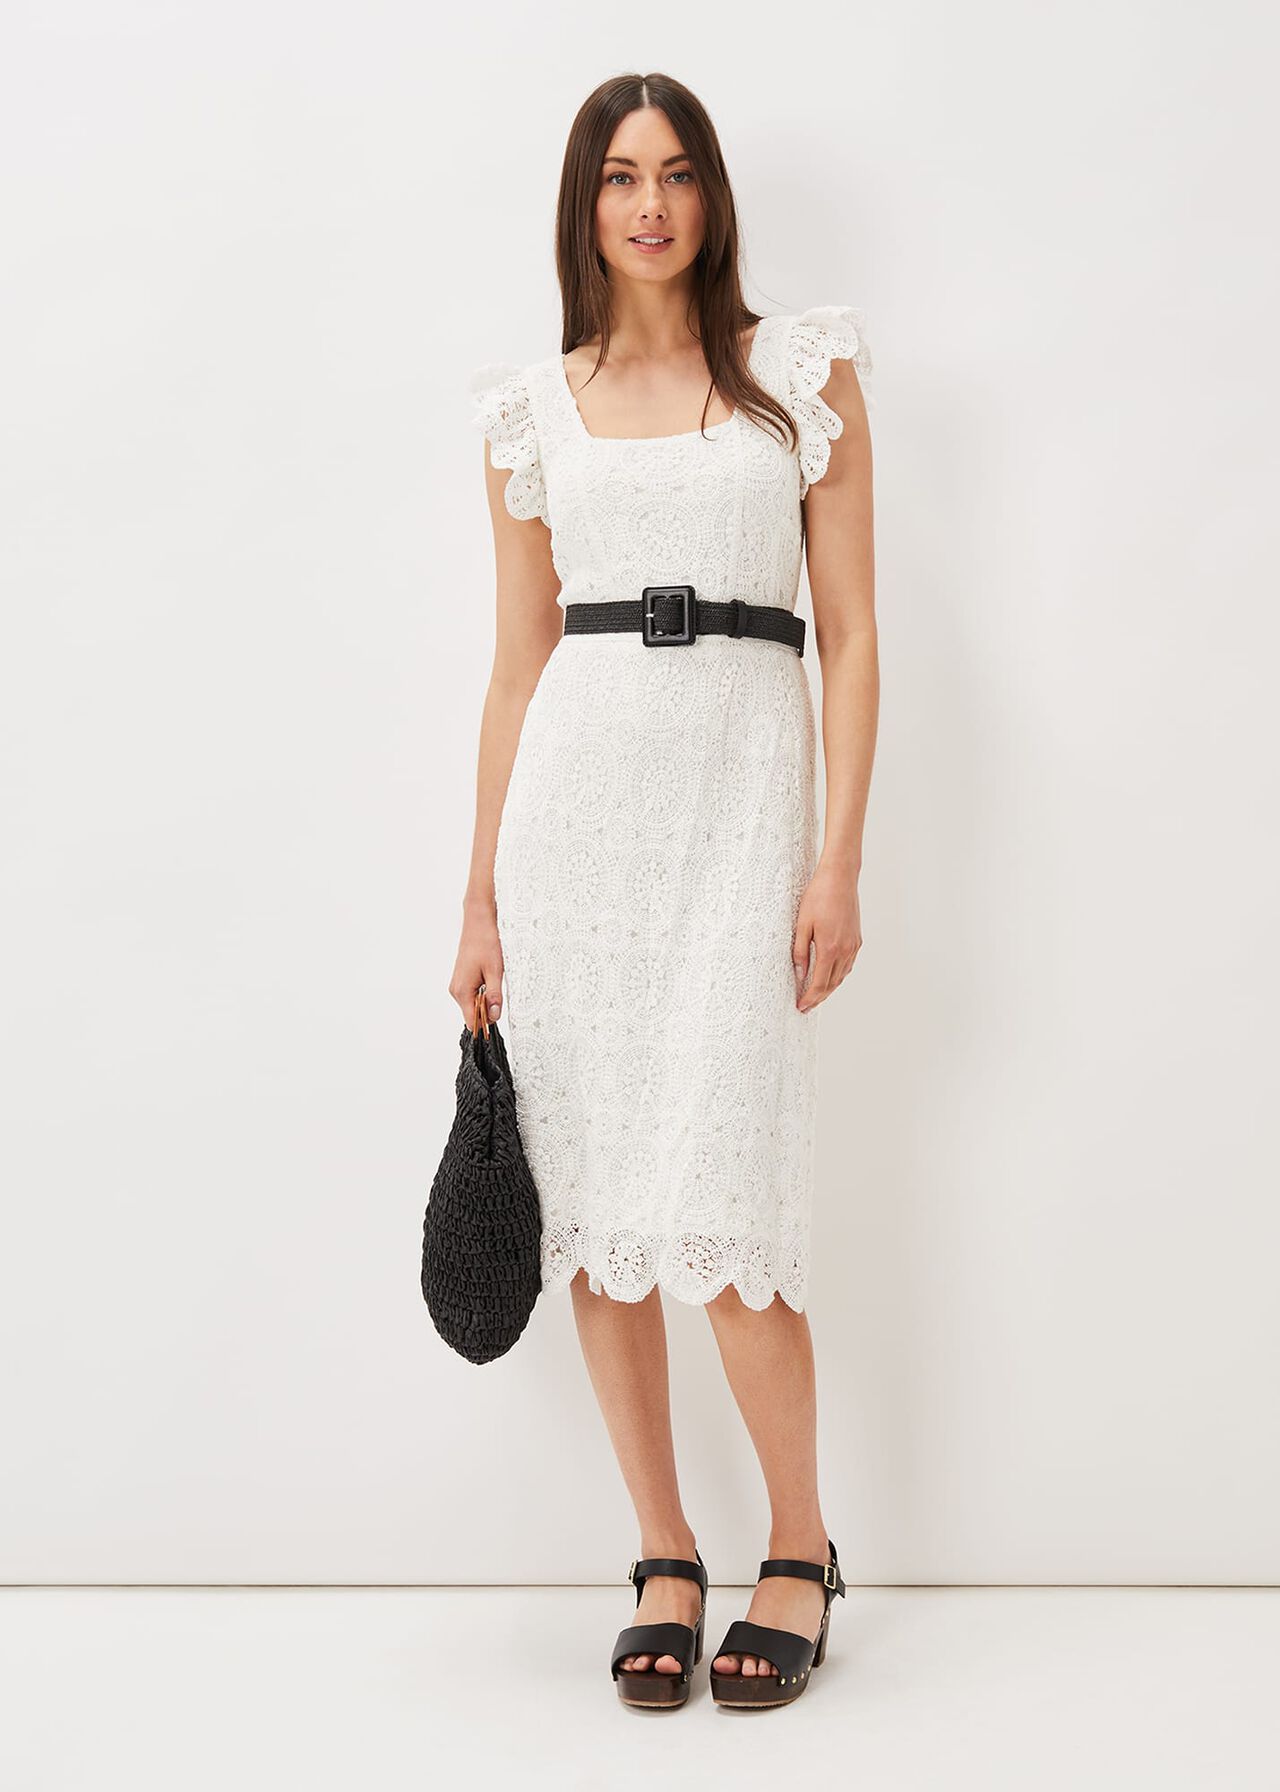 Tamari Crochet Knit Dress